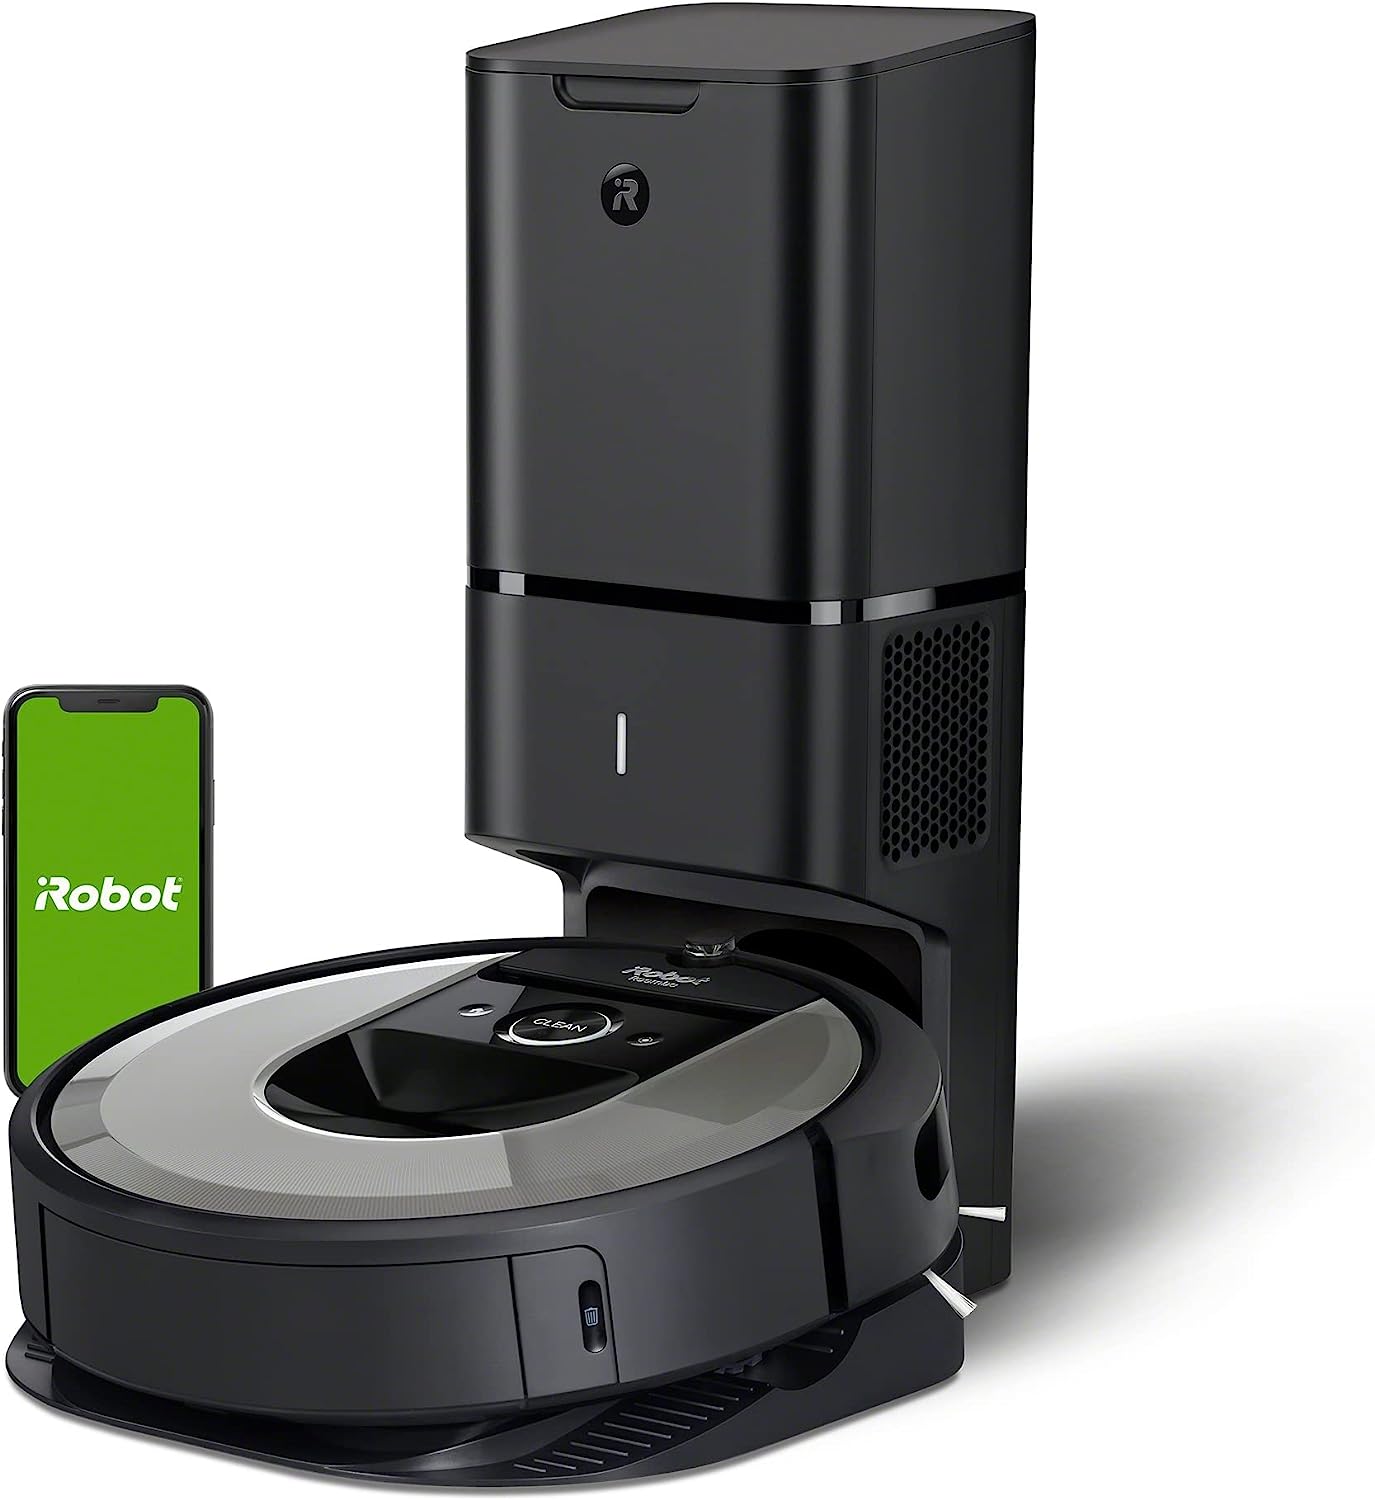 Roomba i7+ vs Roomba i3+